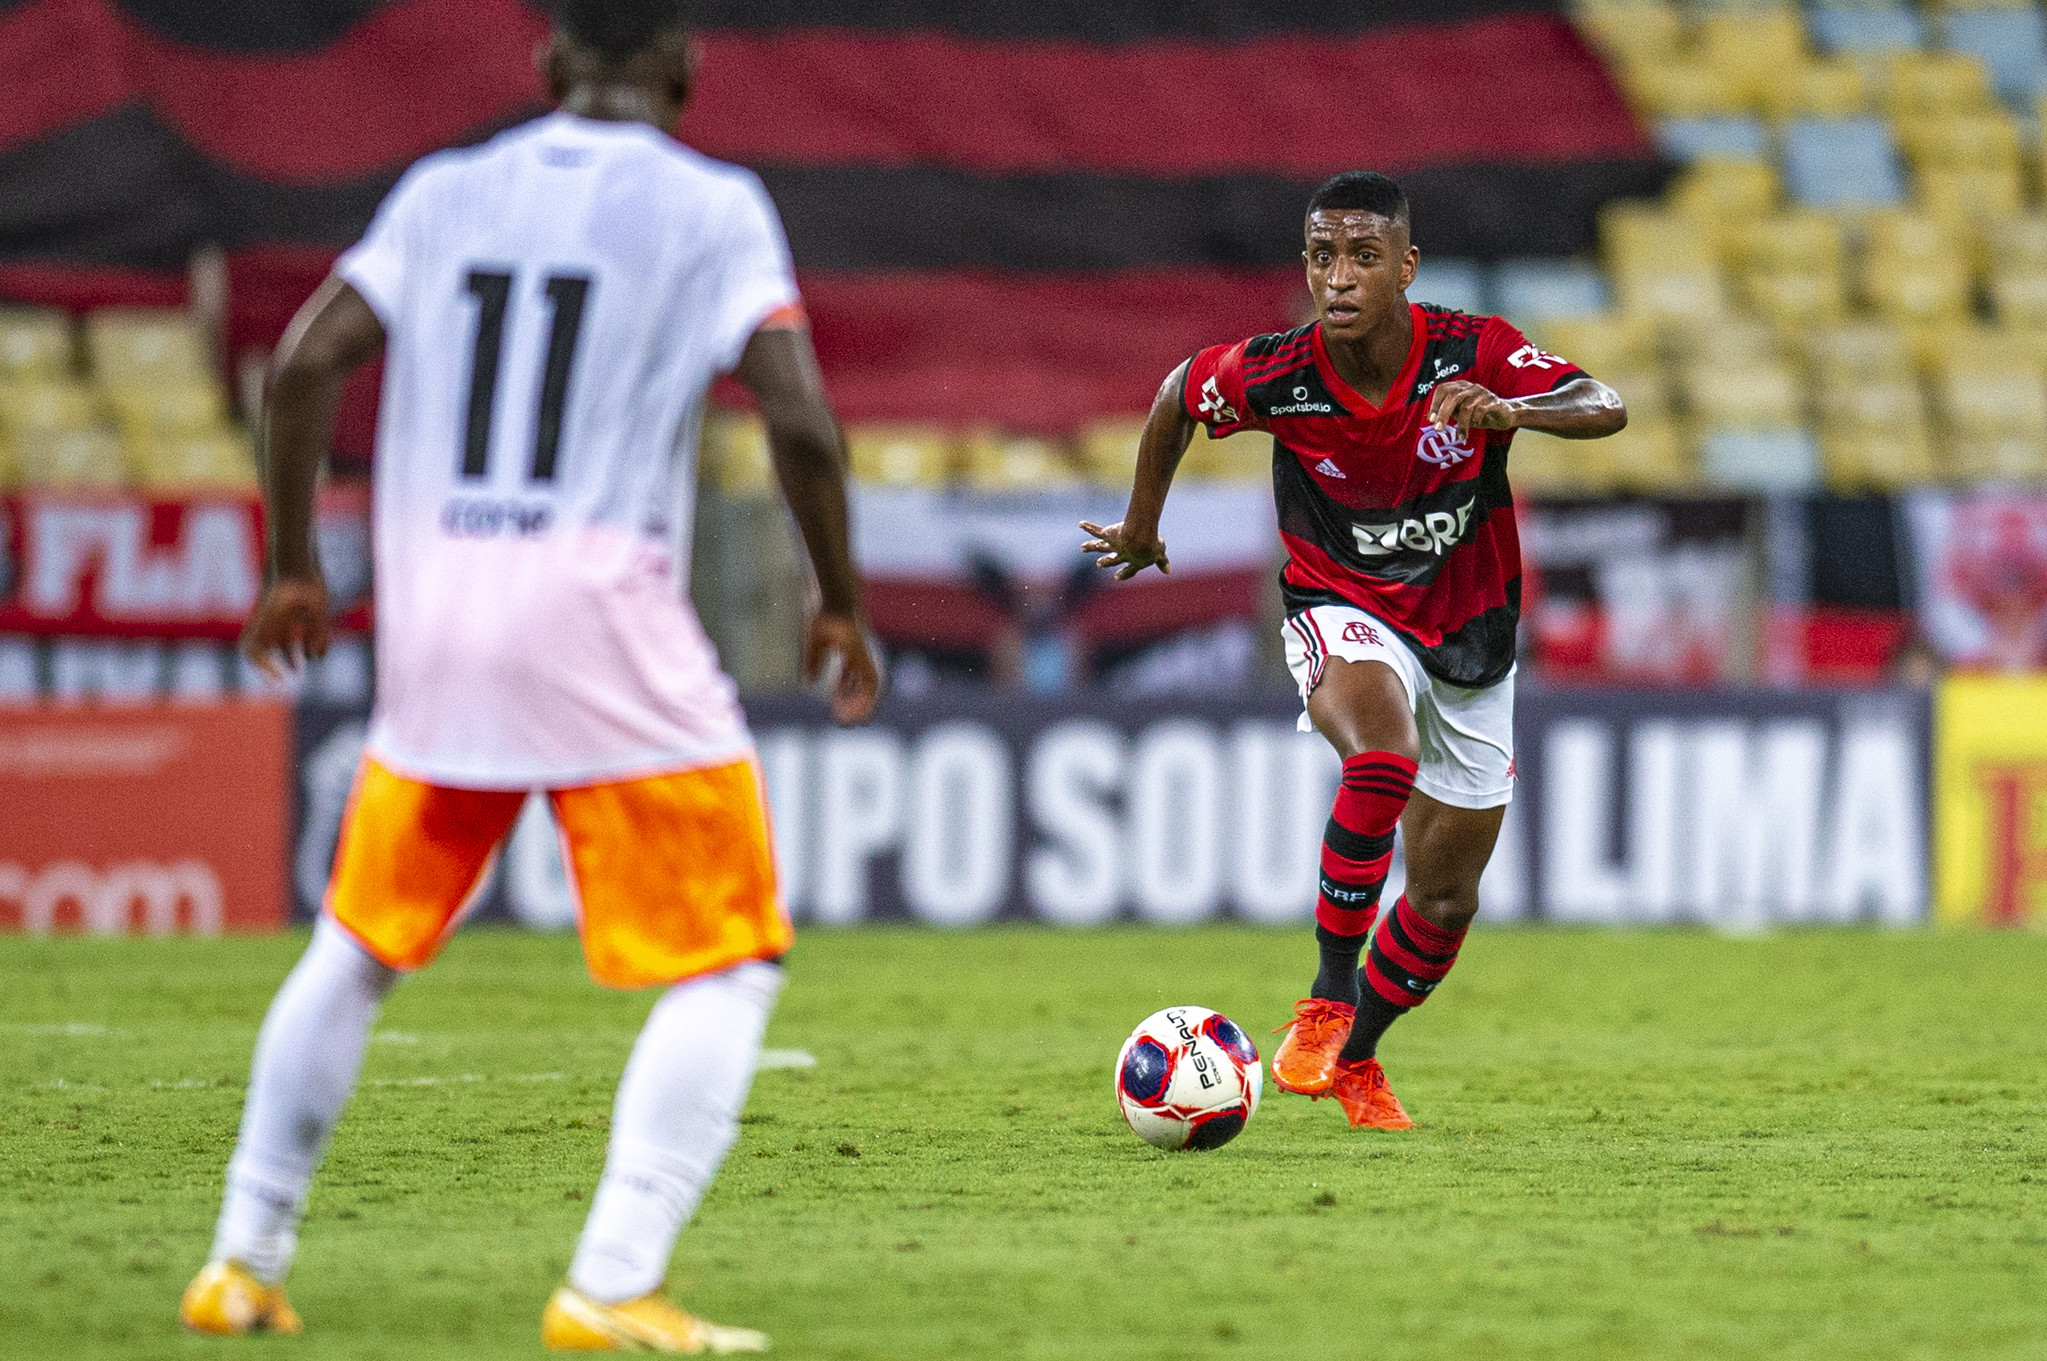 Max disputou 14 jogos pelo profissional do Flamengo antes de se transferir para o Colorado Rapids (Foto: Marcelo Cortes | Flamengo)